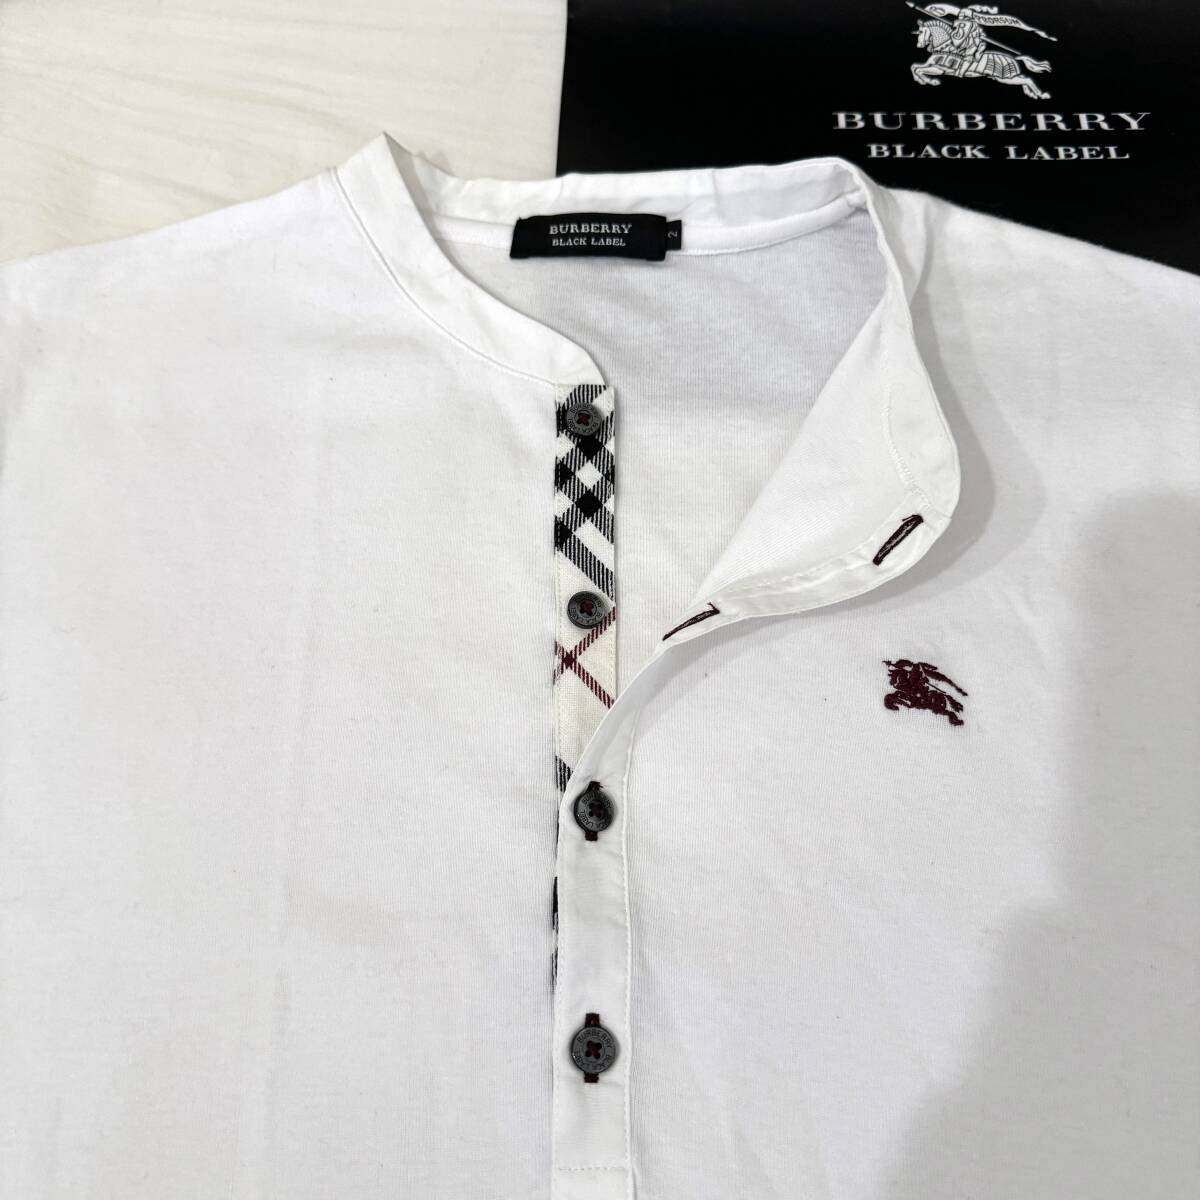  прекрасный наименование товара произведение BURBERRY BLACK LABEL Burberry Black Label короткий рукав застежка с планкой футболка передний .noba проверка шланг вышивка белый 2(M) #2734